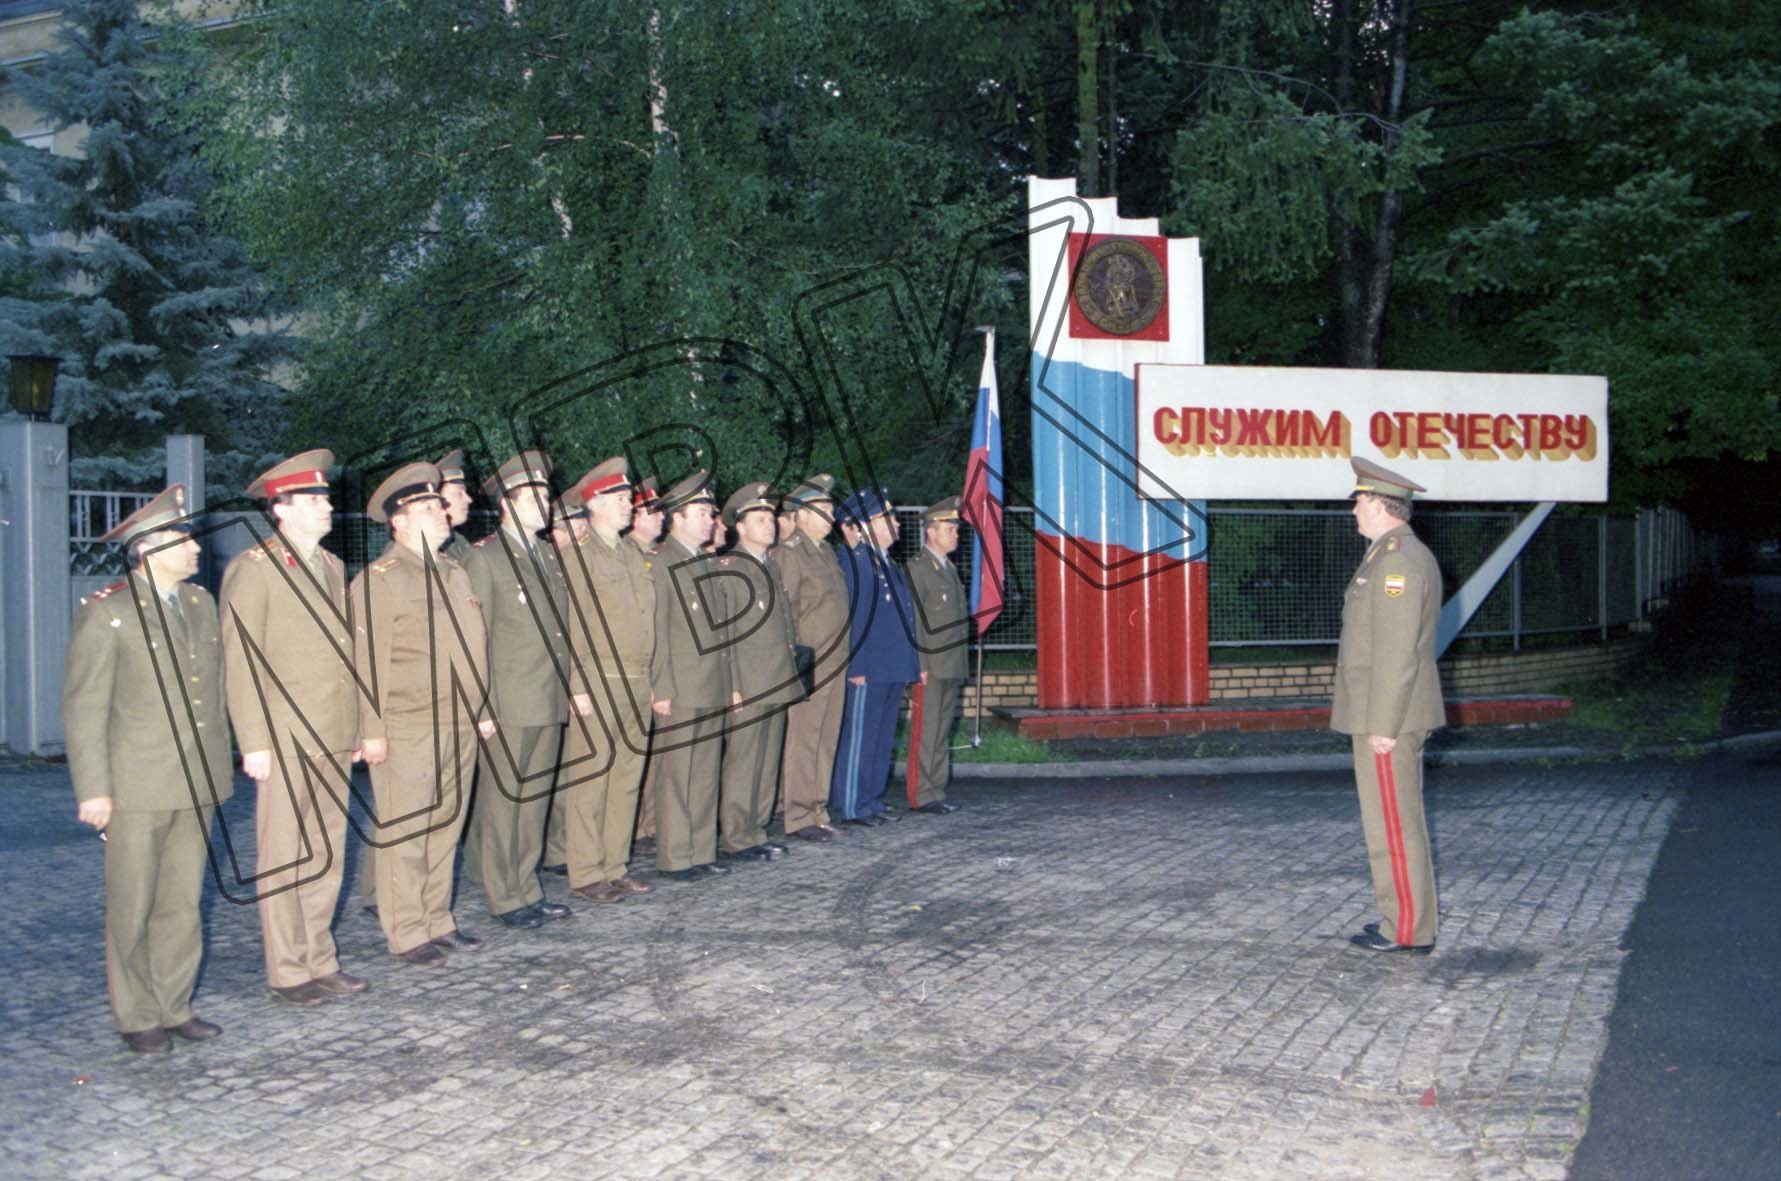 Fotografie: Aufstellung der letzten Offiziere der WGT vor dem Hauptquartier, Wünsdorf, 9. September 1994 (Museum Berlin-Karlshorst RR-P)